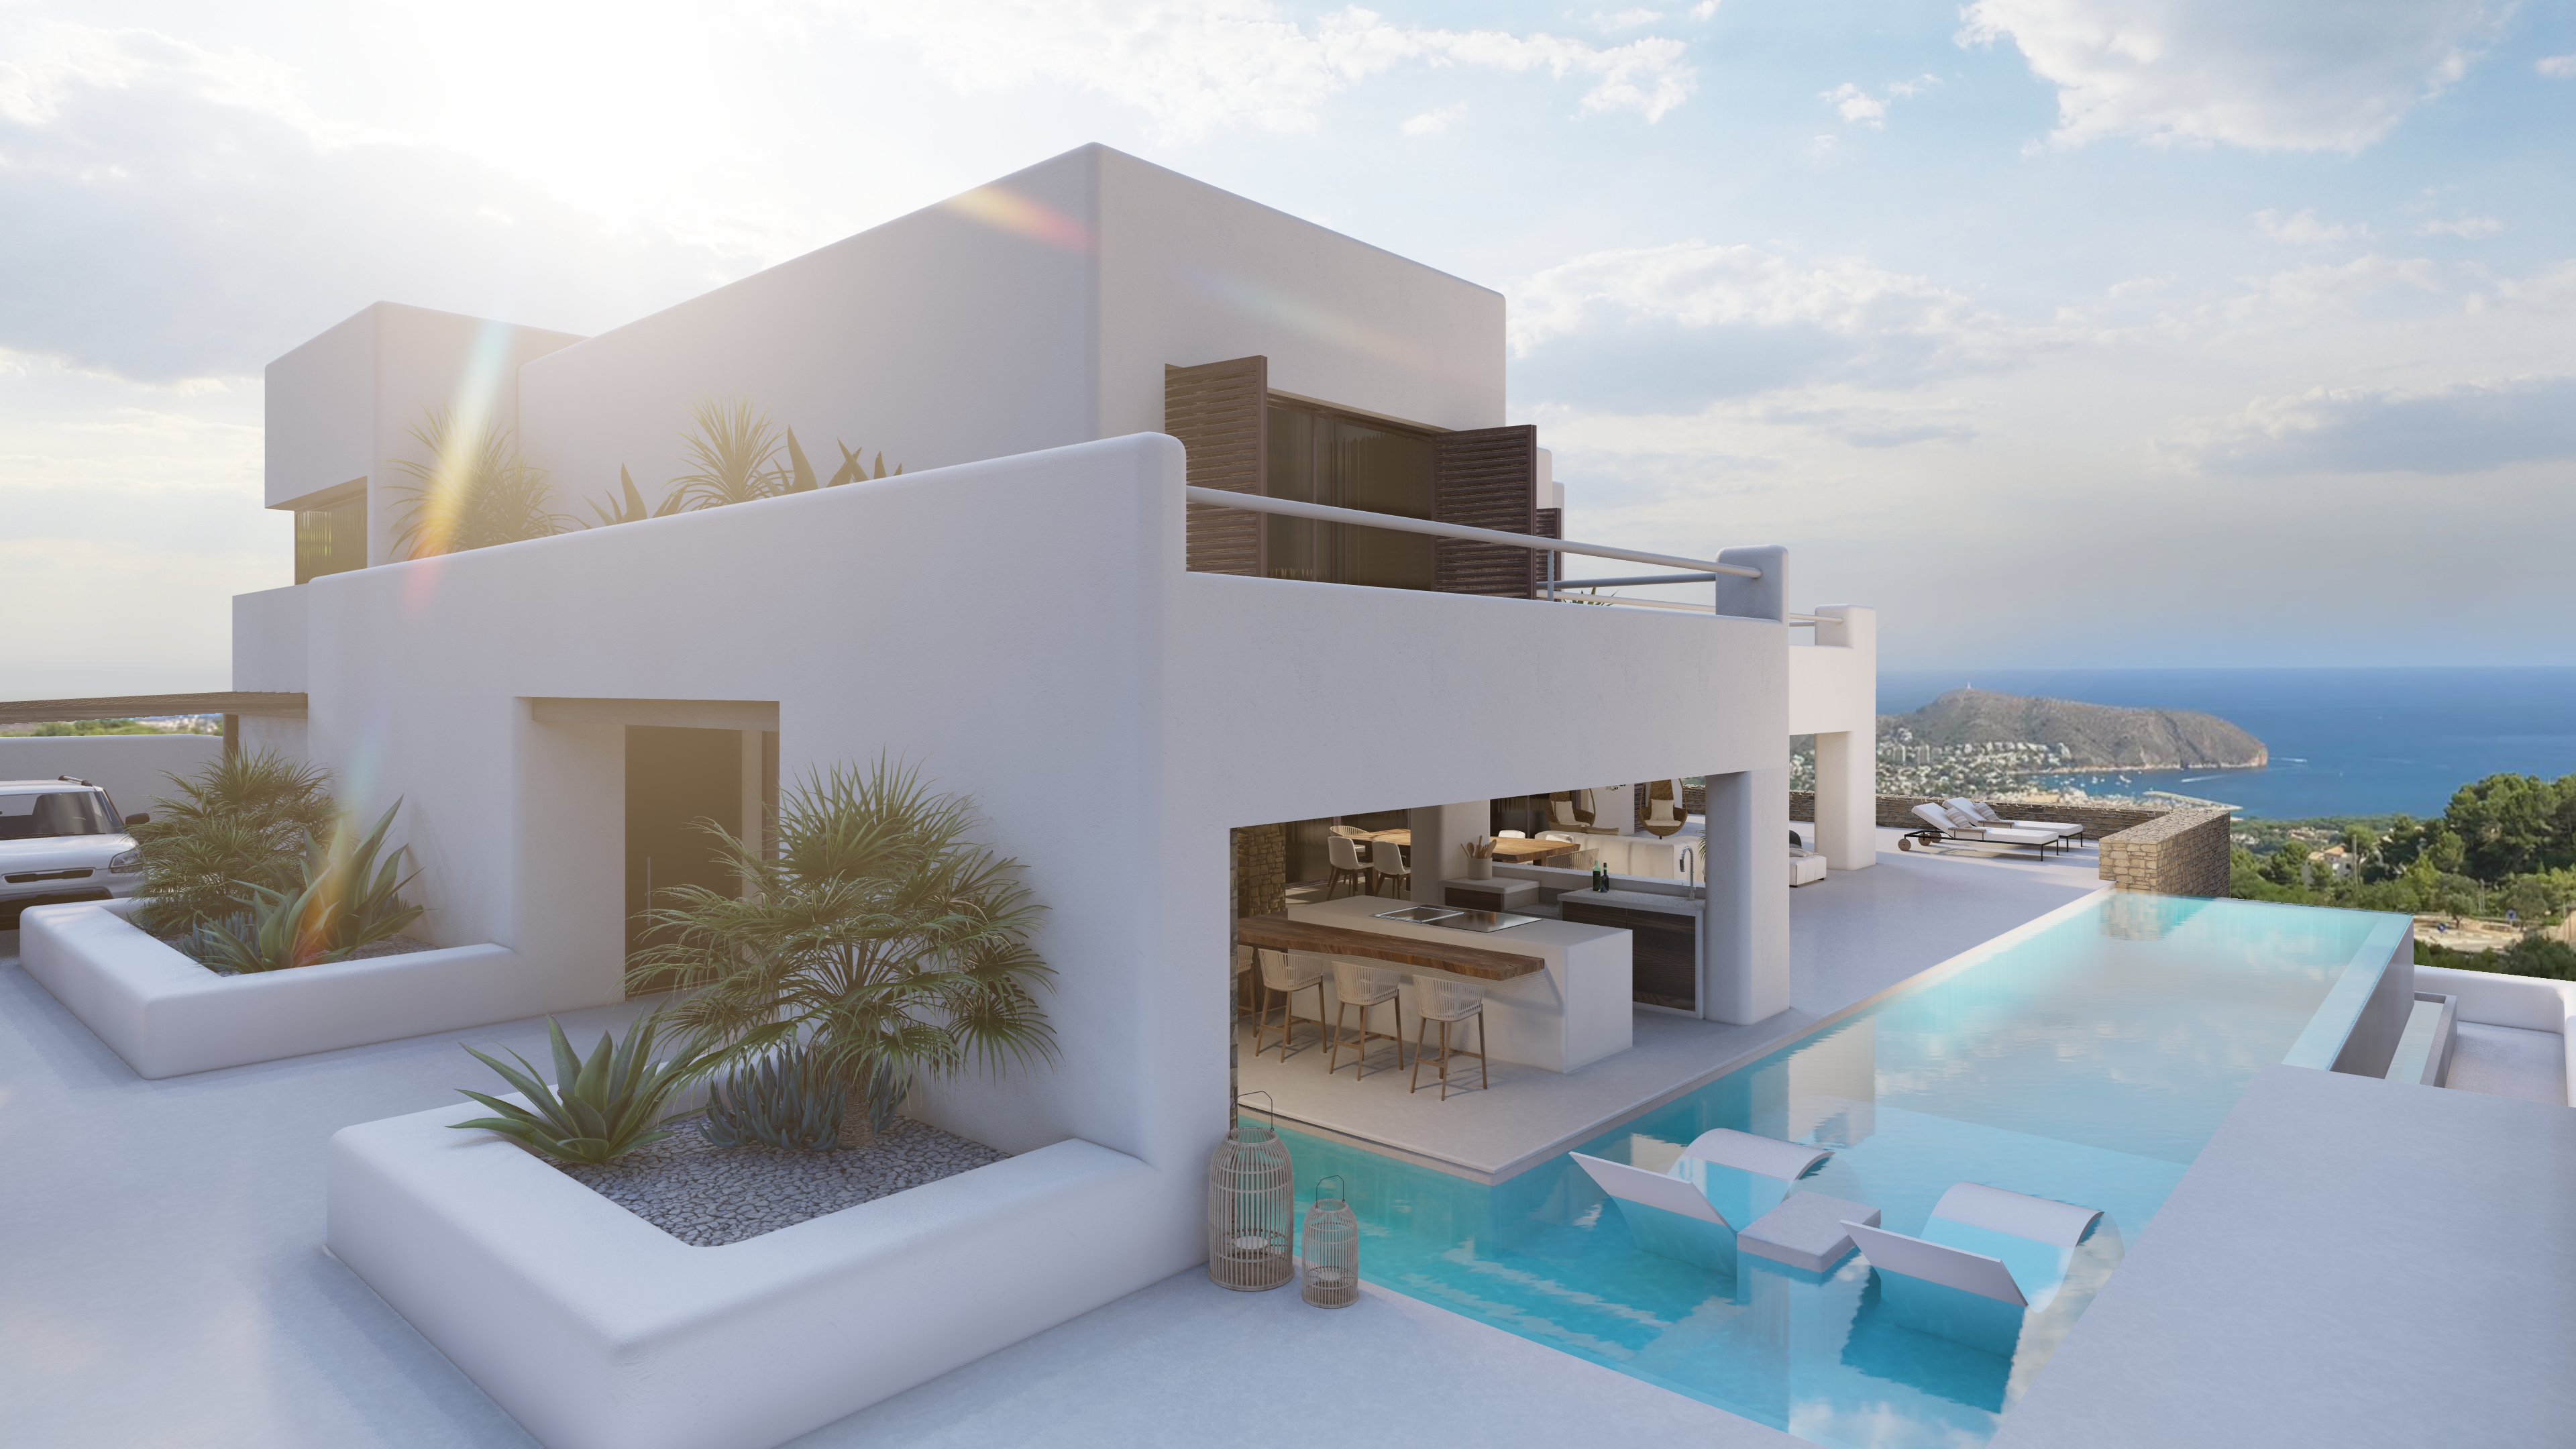 Ibiza-stijl villa met uitzicht op zee in Moraira